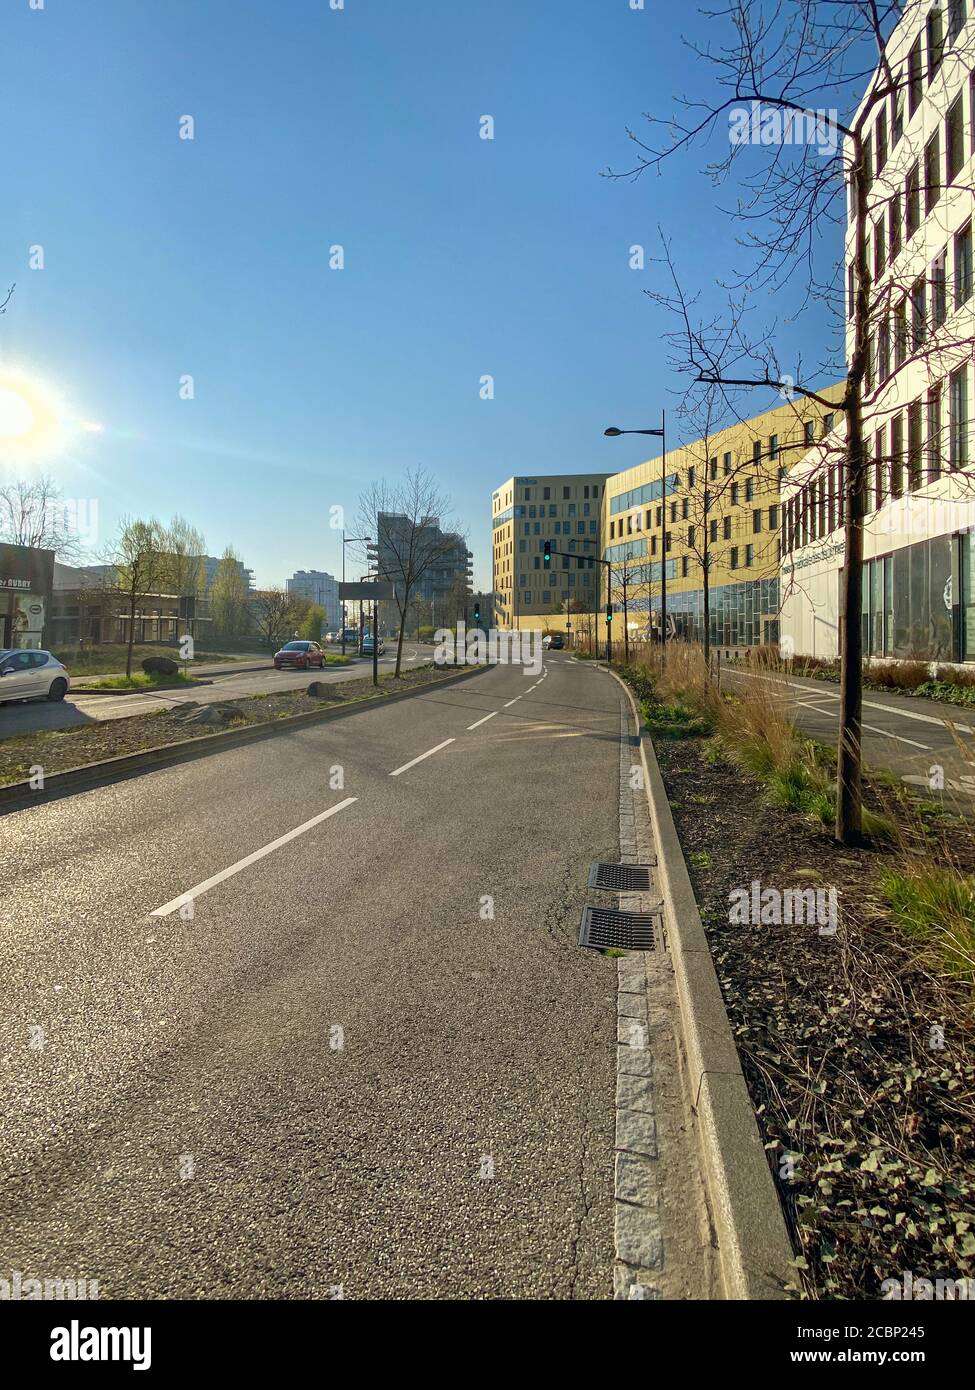 Straßburg, Frankreich - 2. April 2020: Große leere Straße in der Nähe des Rhena-Krankenhauses an der französisch-deutschen Grenze während der allgemeinen Sperrung aufgrund der weltweiten Cornavirus-Covid-19-Pandemie Stockfoto